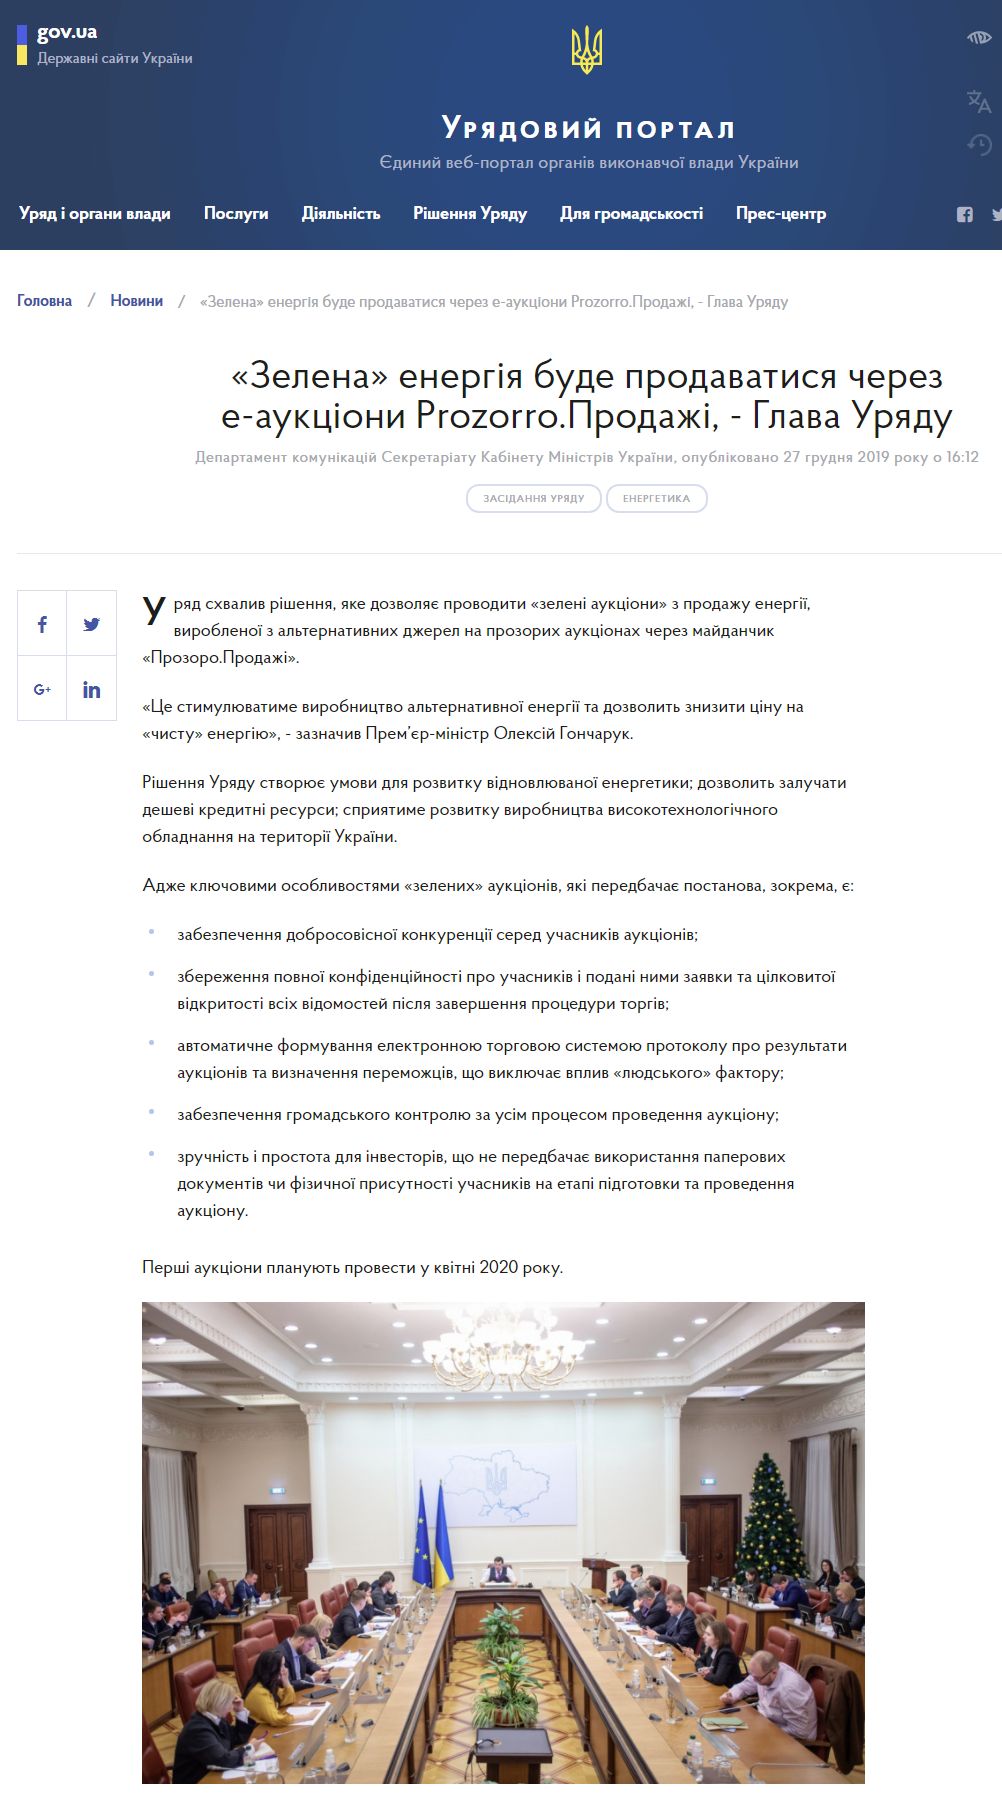 https://www.kmu.gov.ua/news/zelena-energiya-bude-prodavatisya-cherez-e-aukcioni-prozorroprodazhi-glava-uryadu